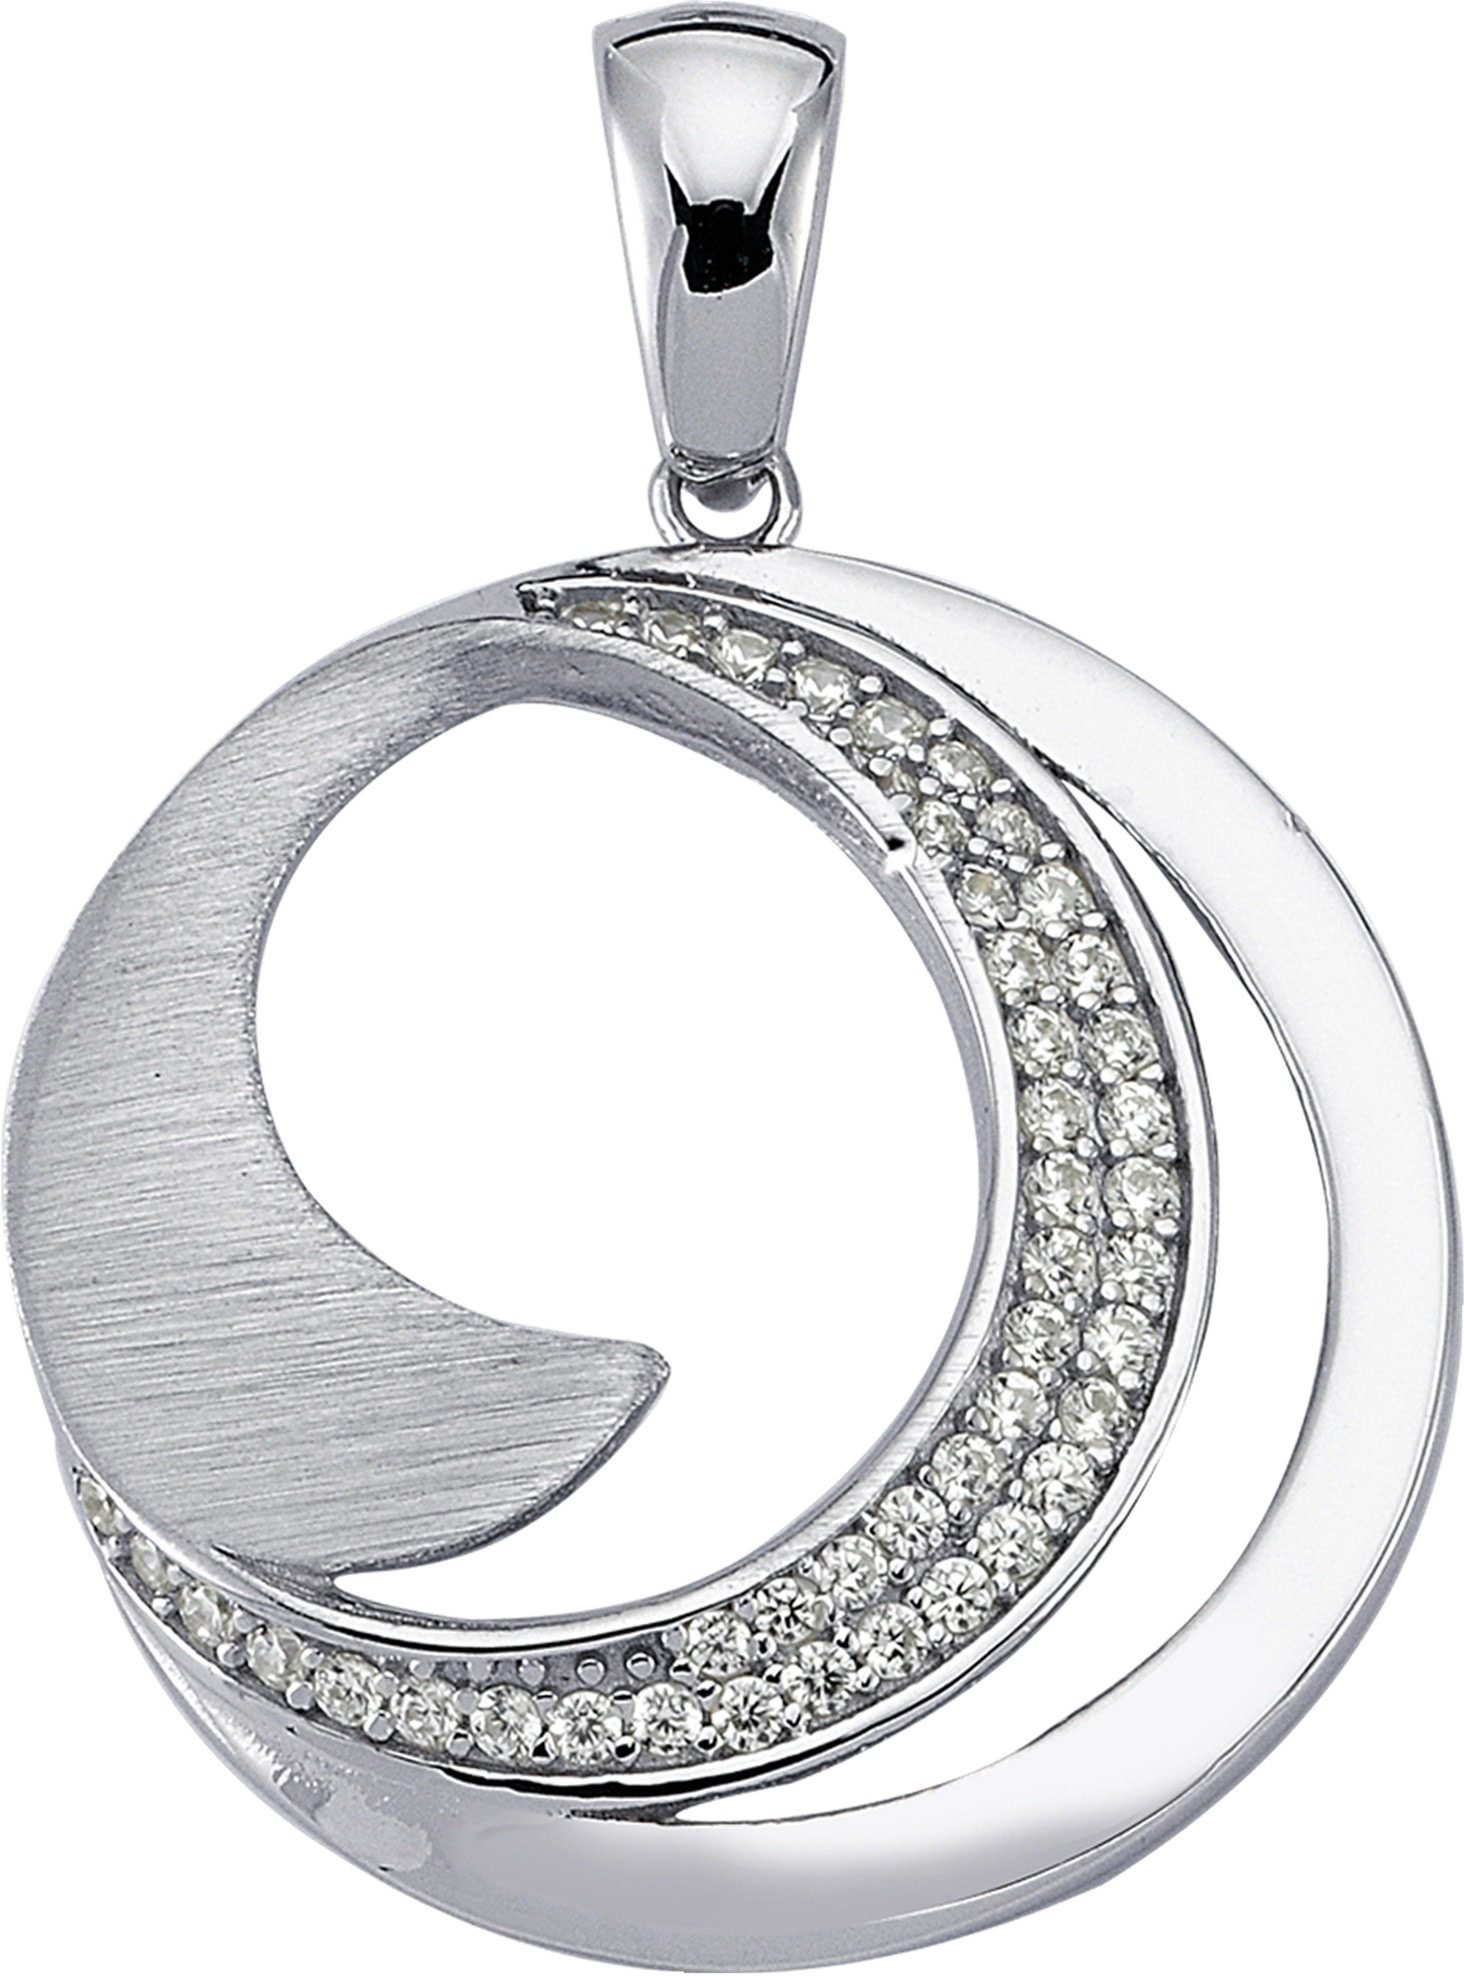 Balia Kettenanhänger Balia Damen Kettenanhänger Silber, Kettenanhänger (Circle) ca. 3cm, 925 Sterling Silber